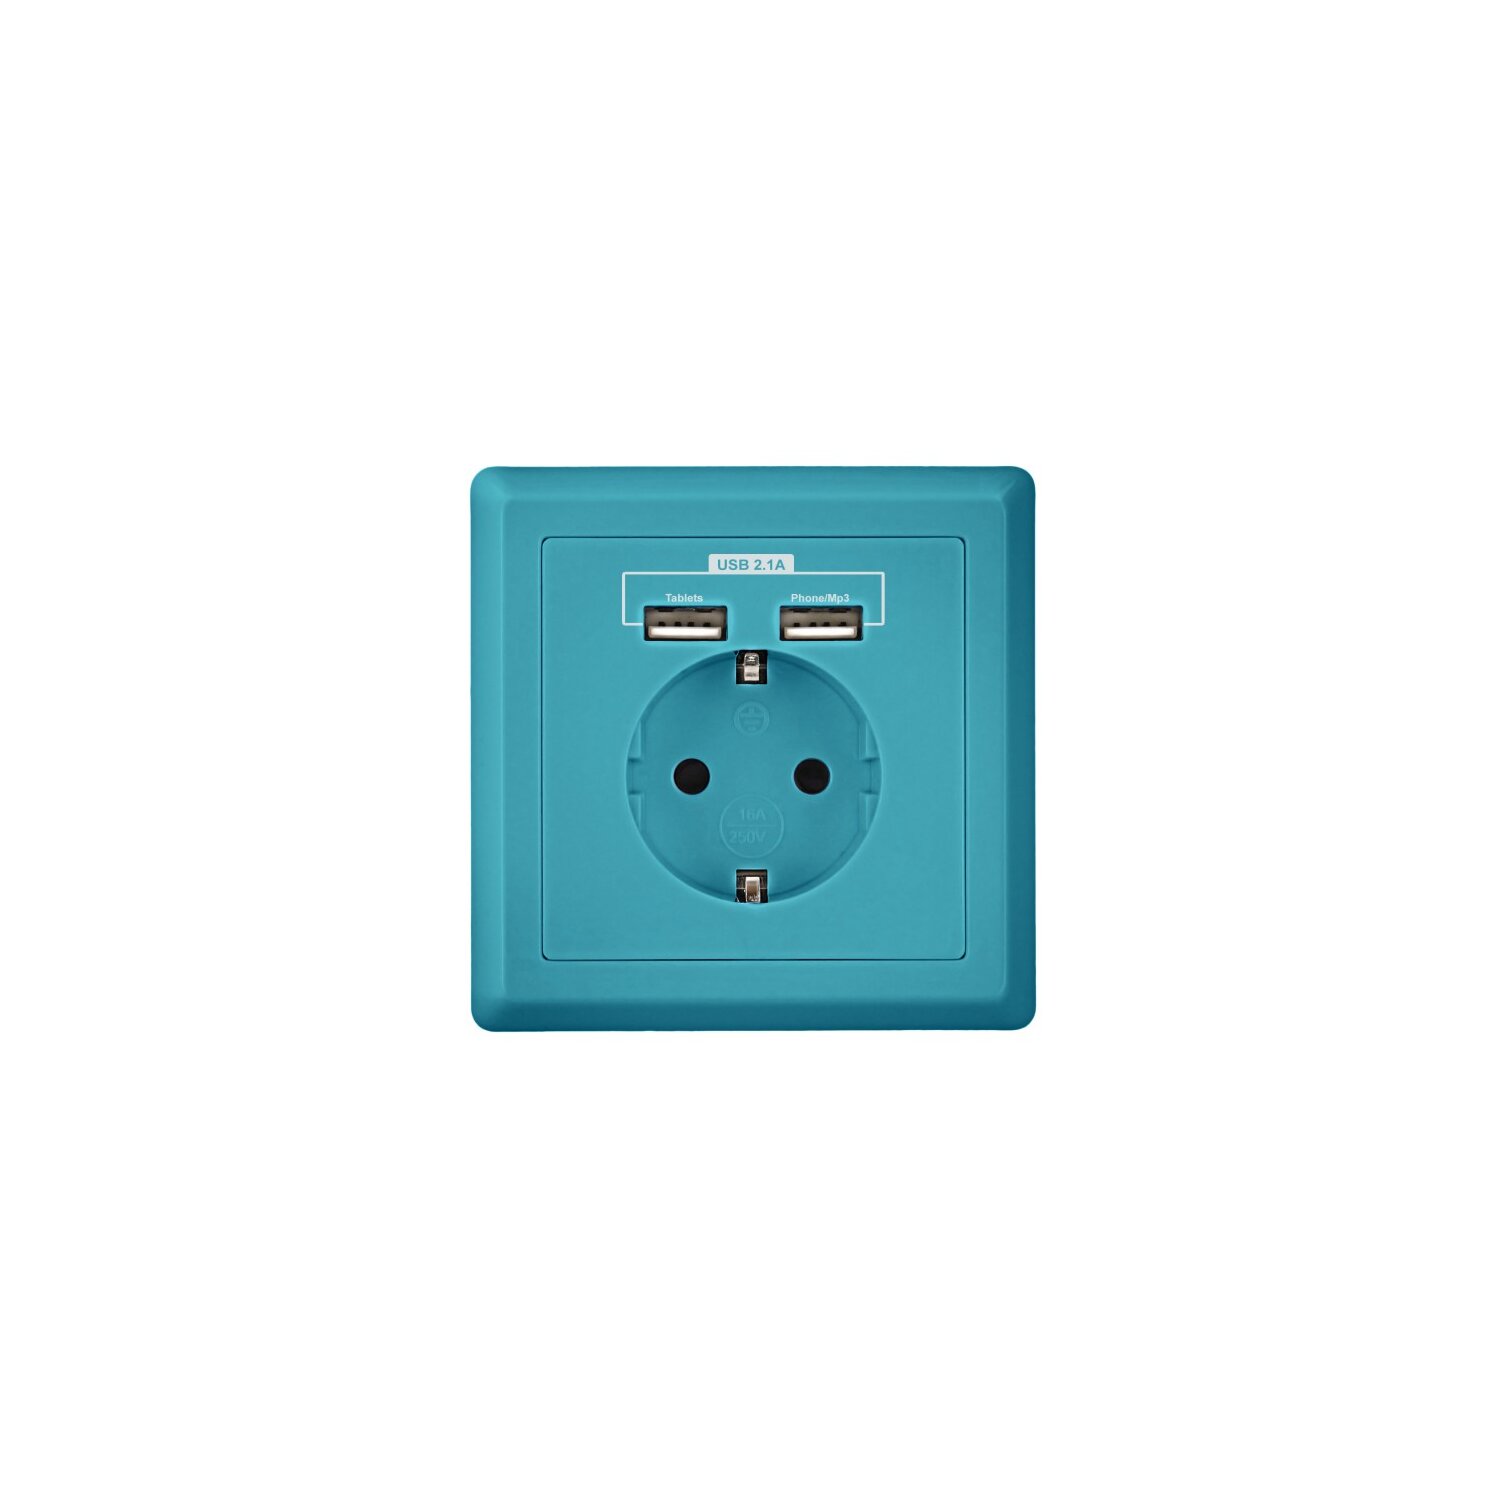 SCHUKO Steckdose – Die Steckdose mit USB-Anschluss 